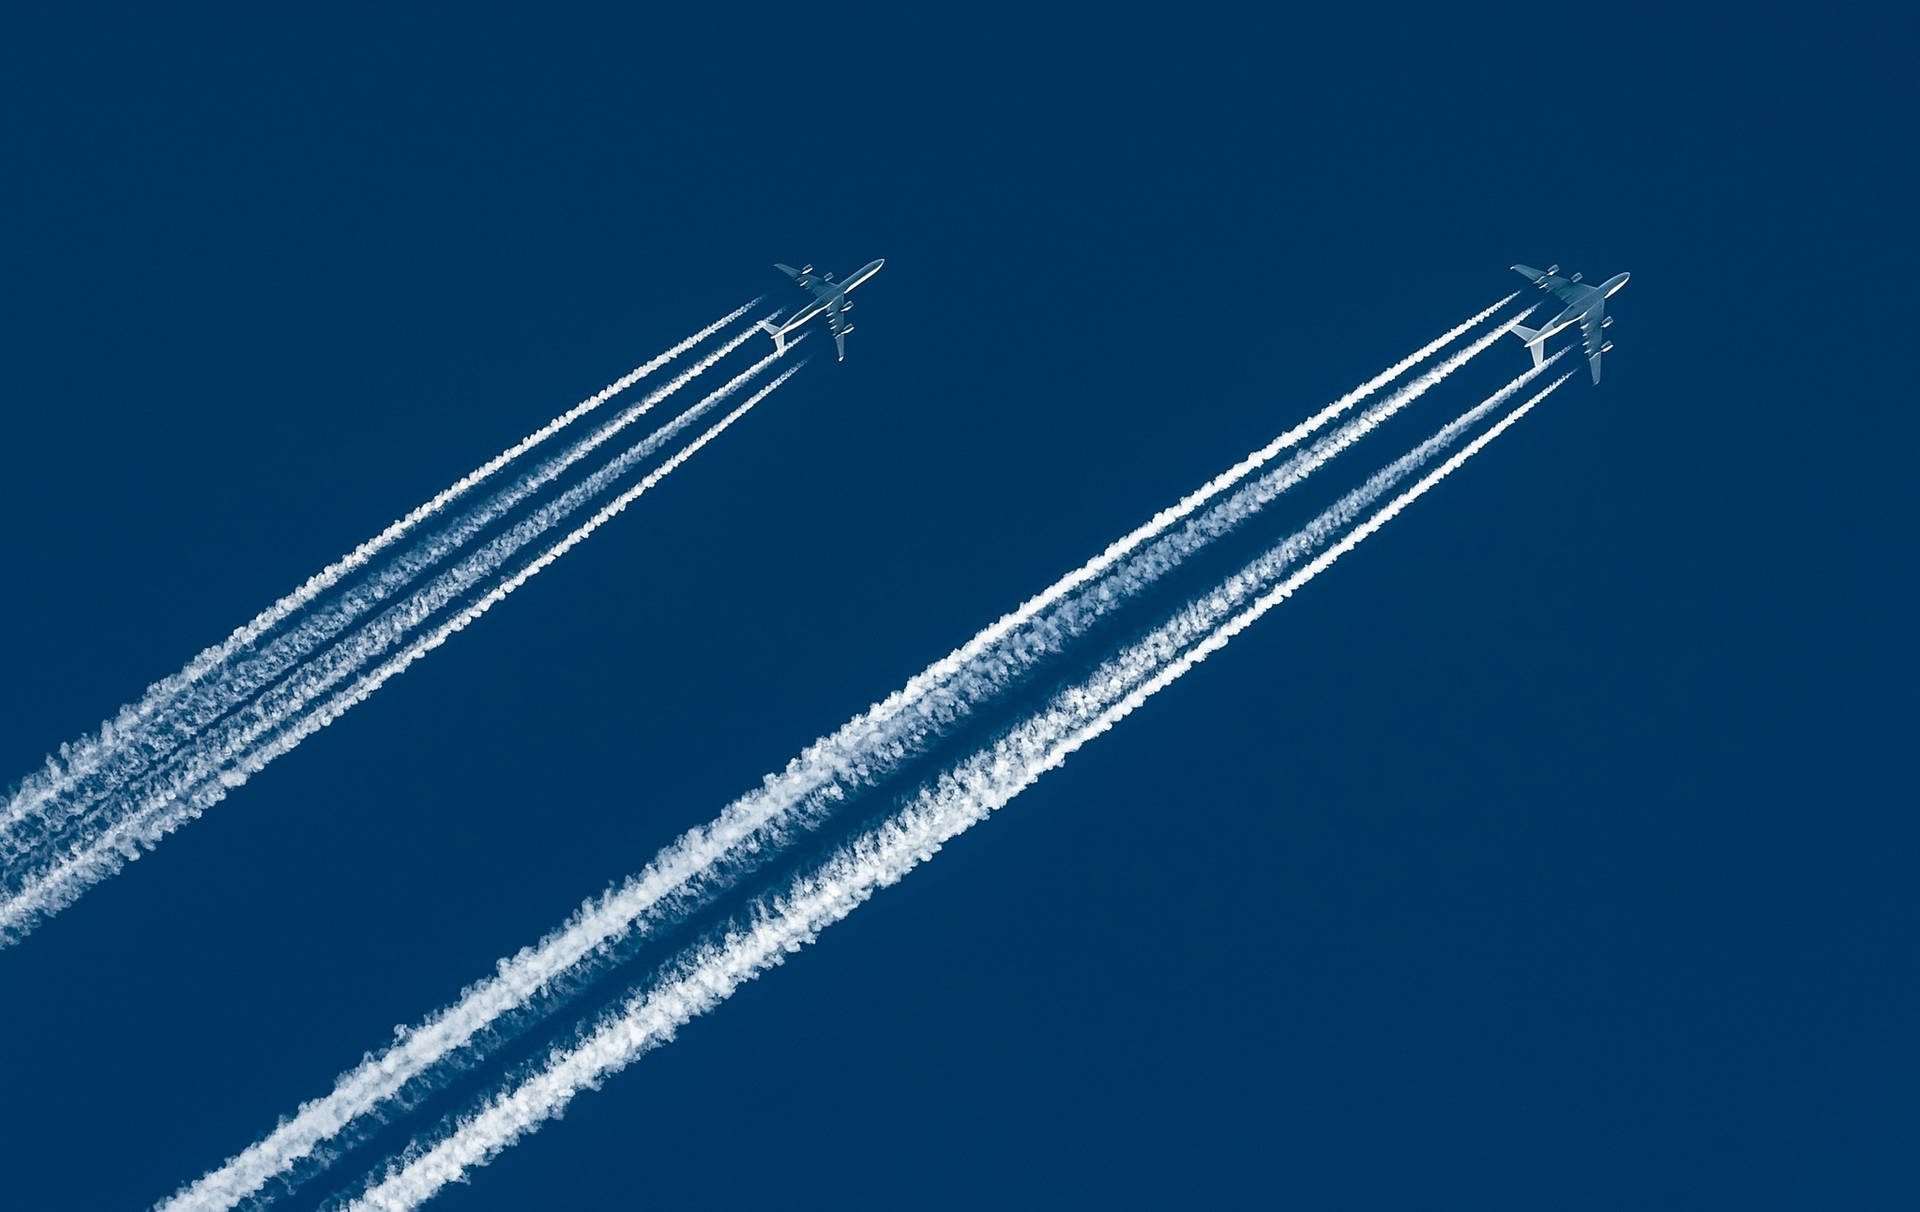 Baggrundsbillede: Se flyflytninger fra verdens fremtrædende lufthavne. - Se flyflytninger fra verdens fremtrædende lufthavne med Google Flights Plane Trails baggrundsbillede. Wallpaper